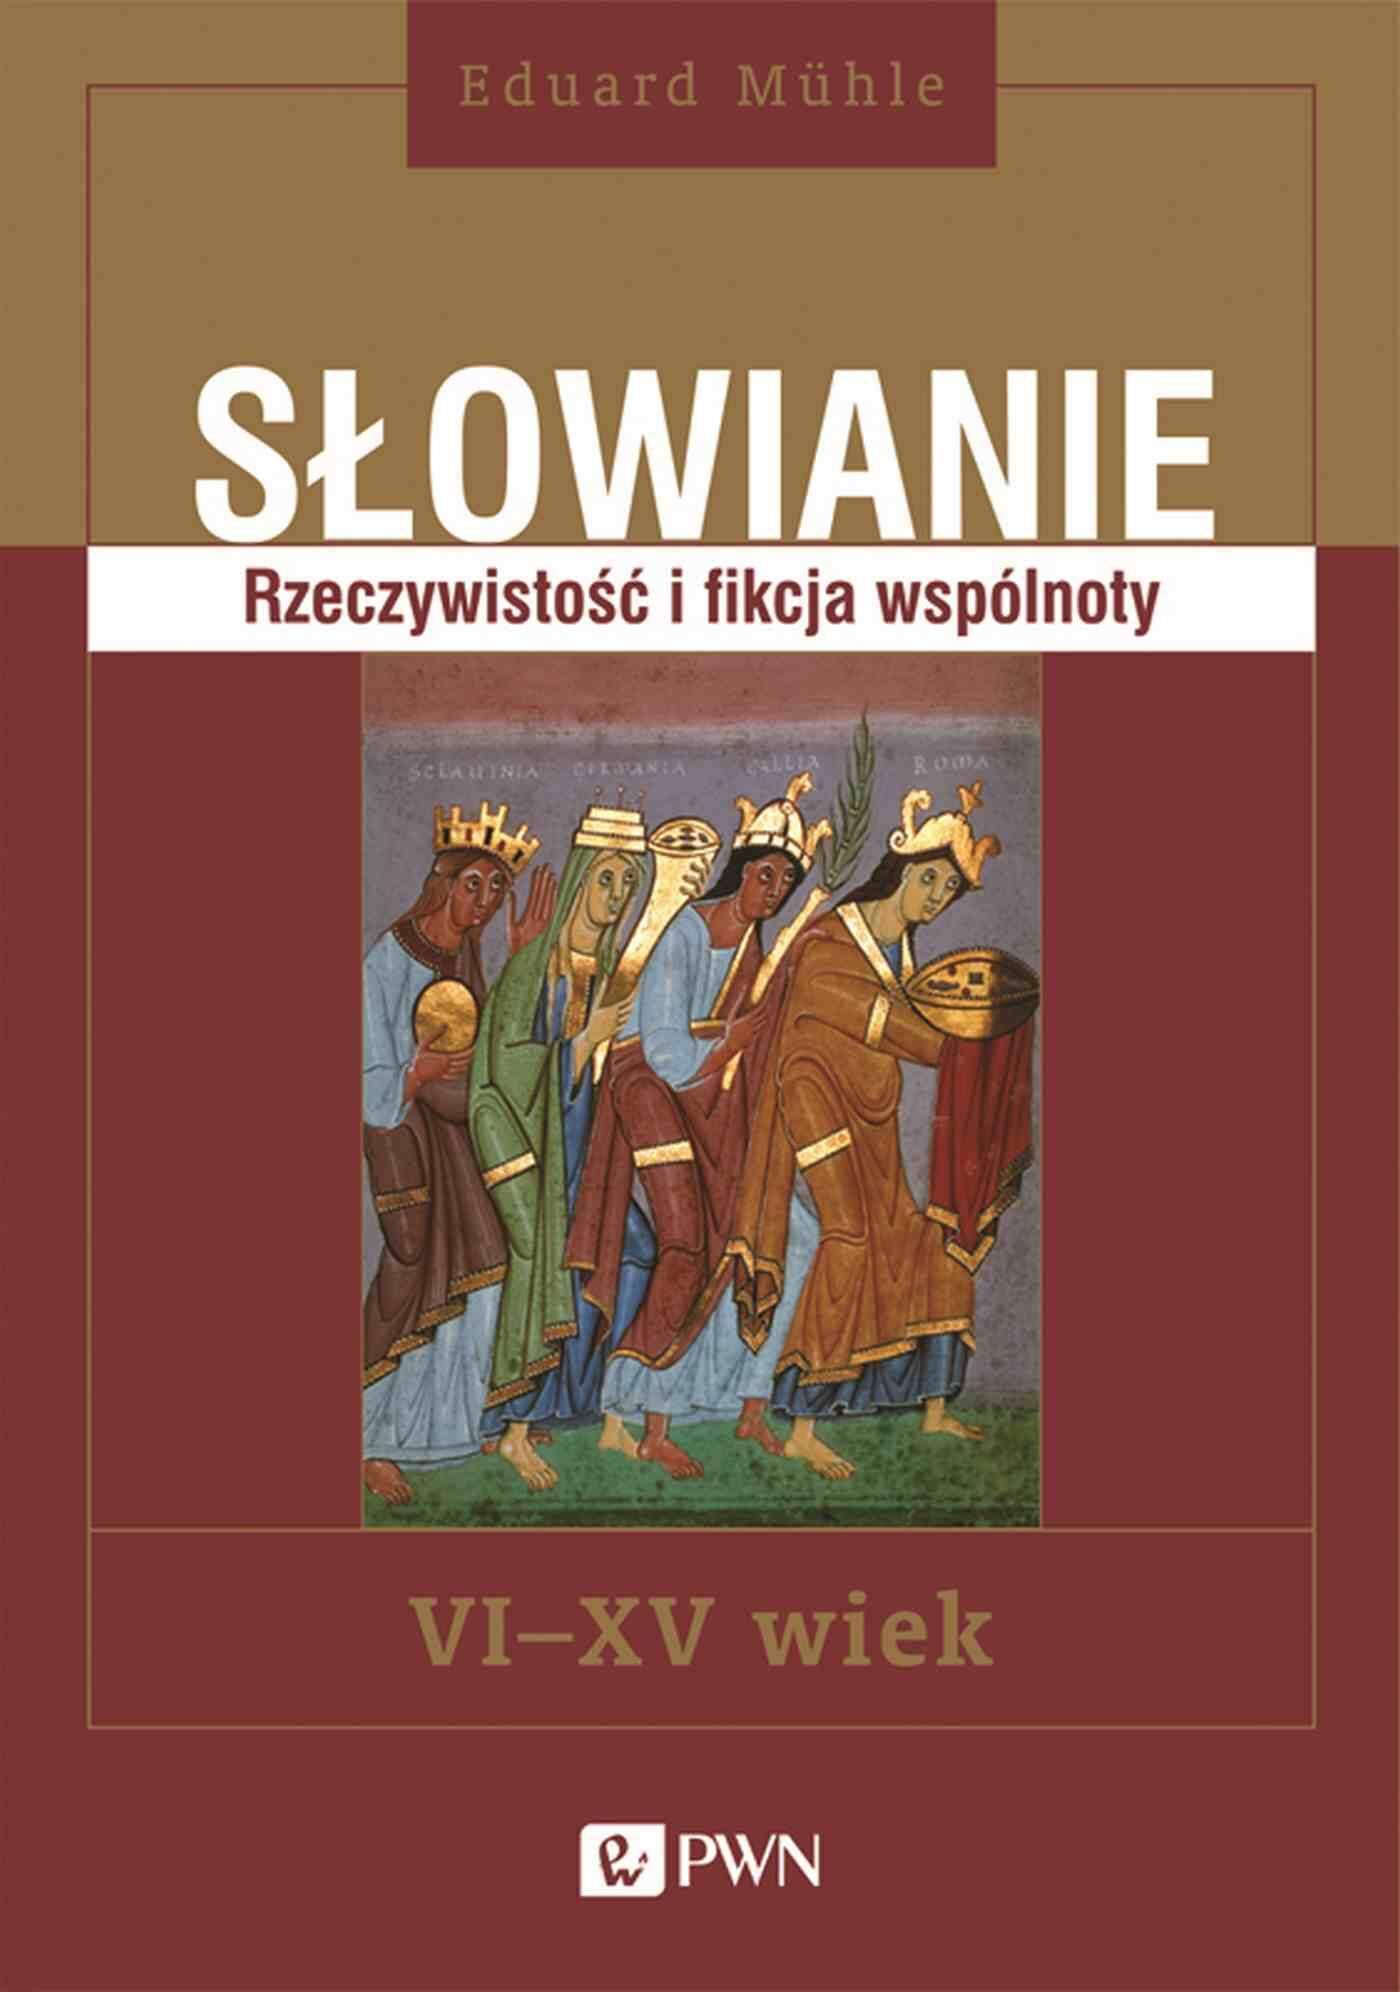 Słowianie. Rzeczywistość i fikcja wspólnoty, VI-XV wiek